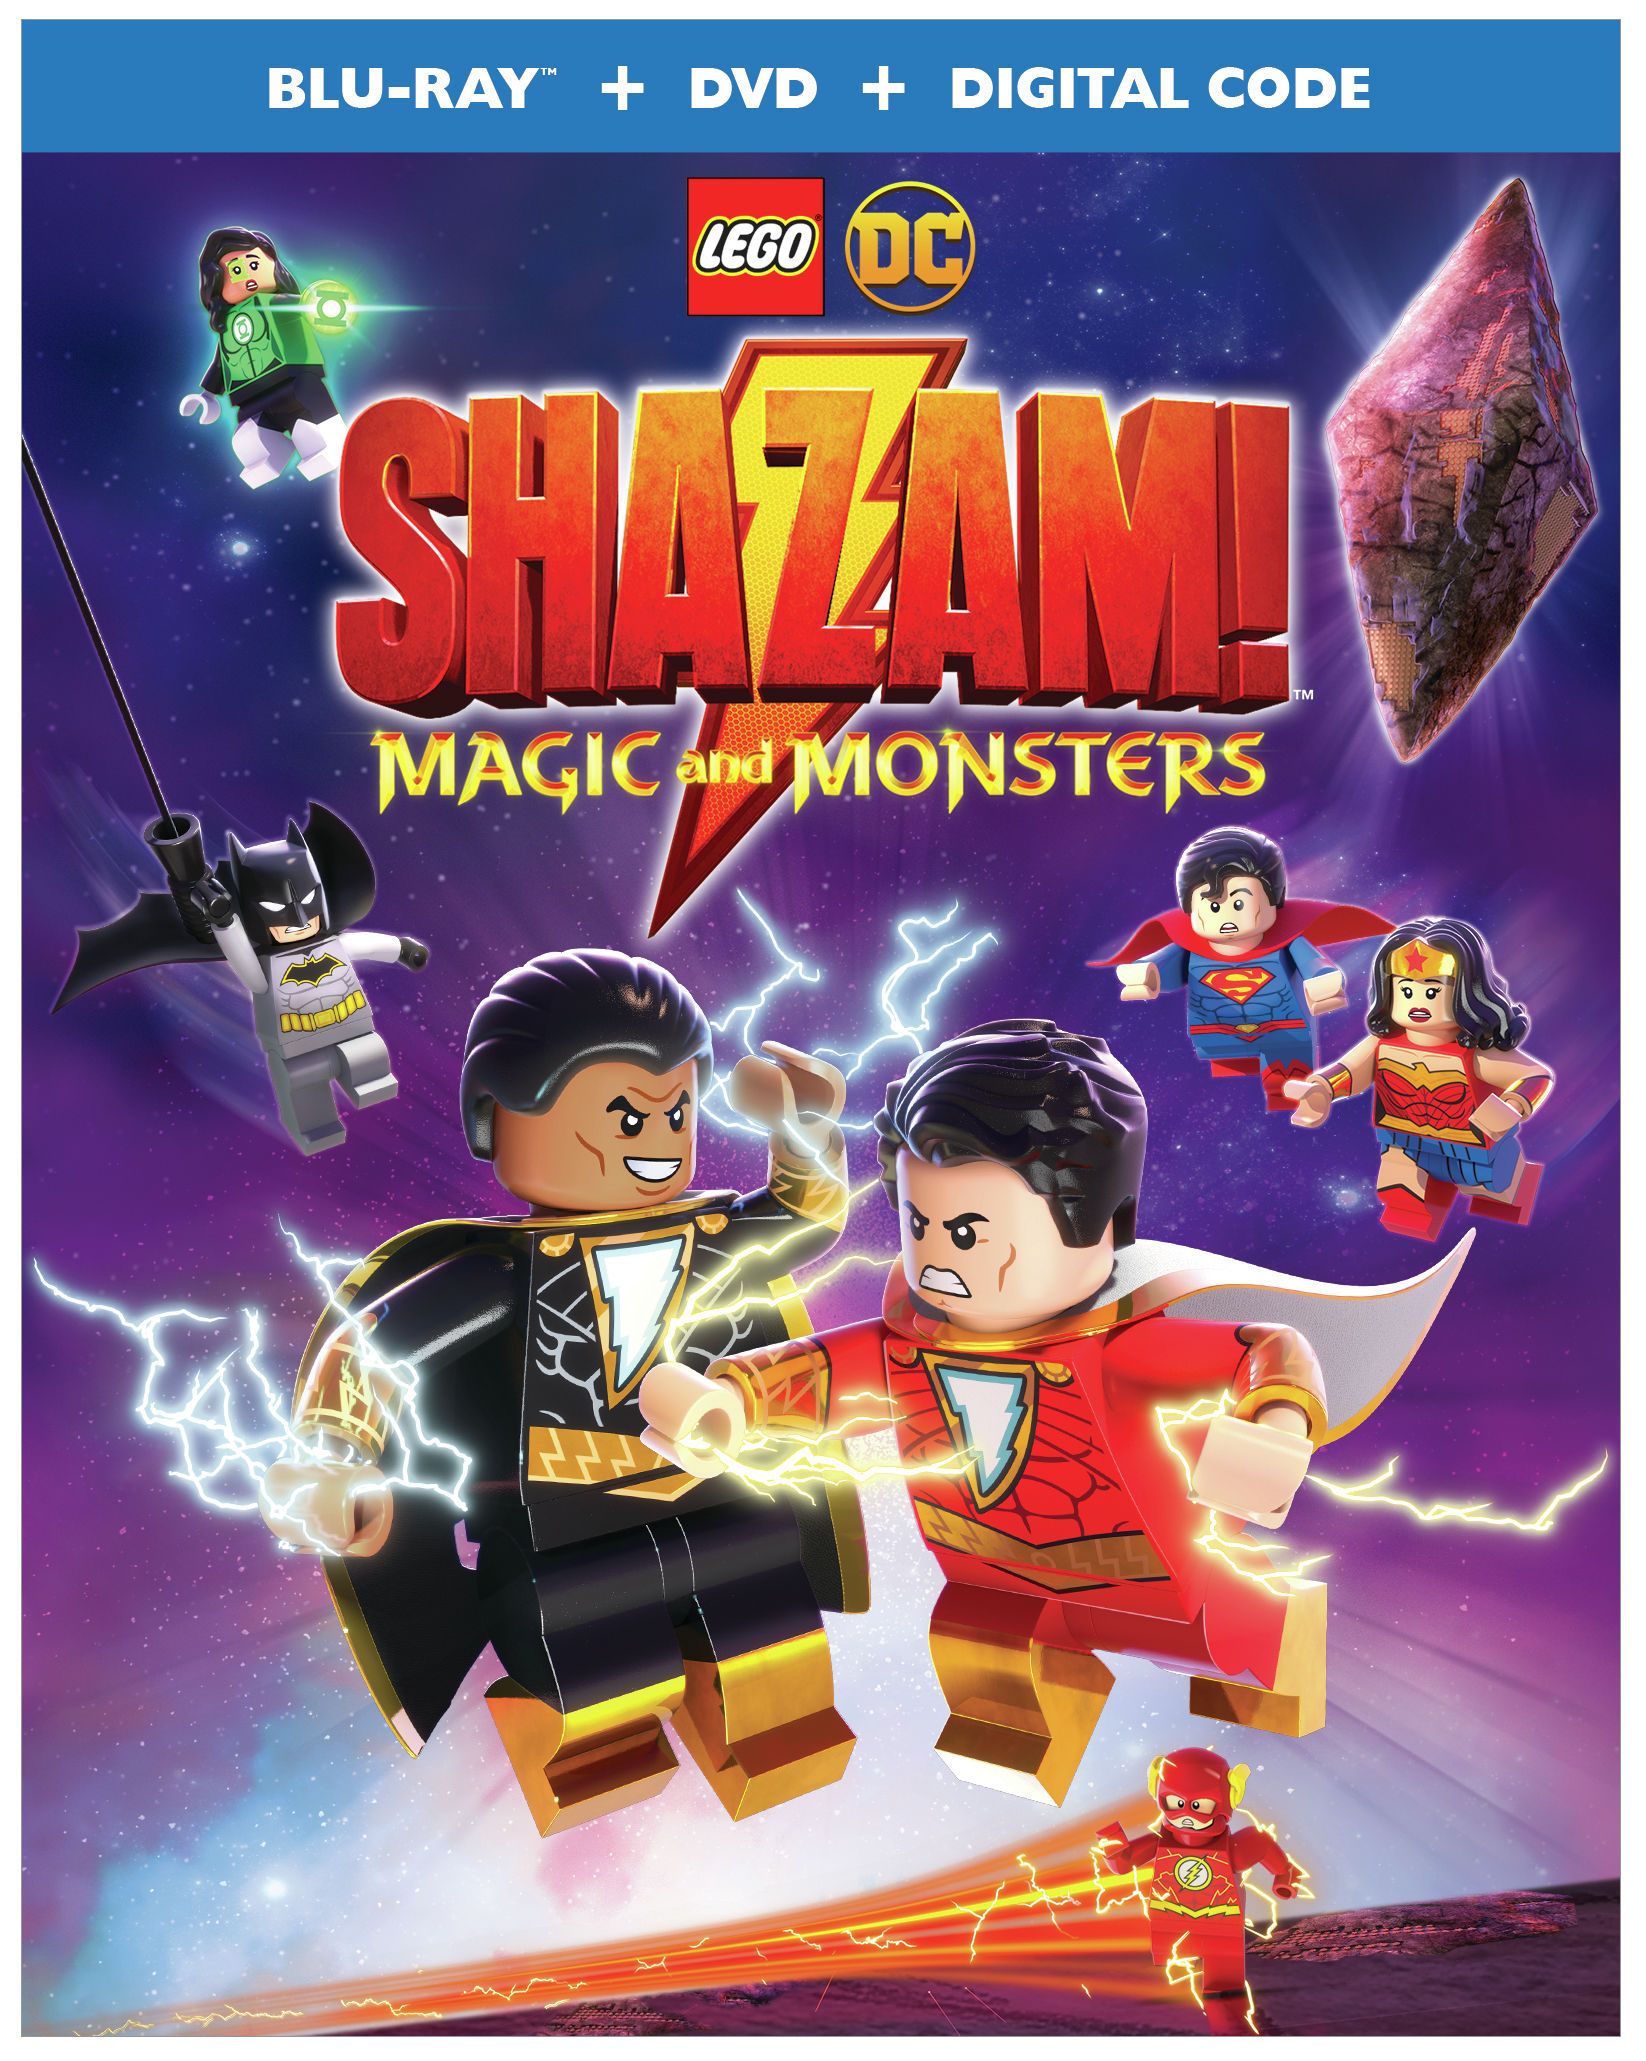 LEGO DC: Shazam! Magic and Monsters Image 2